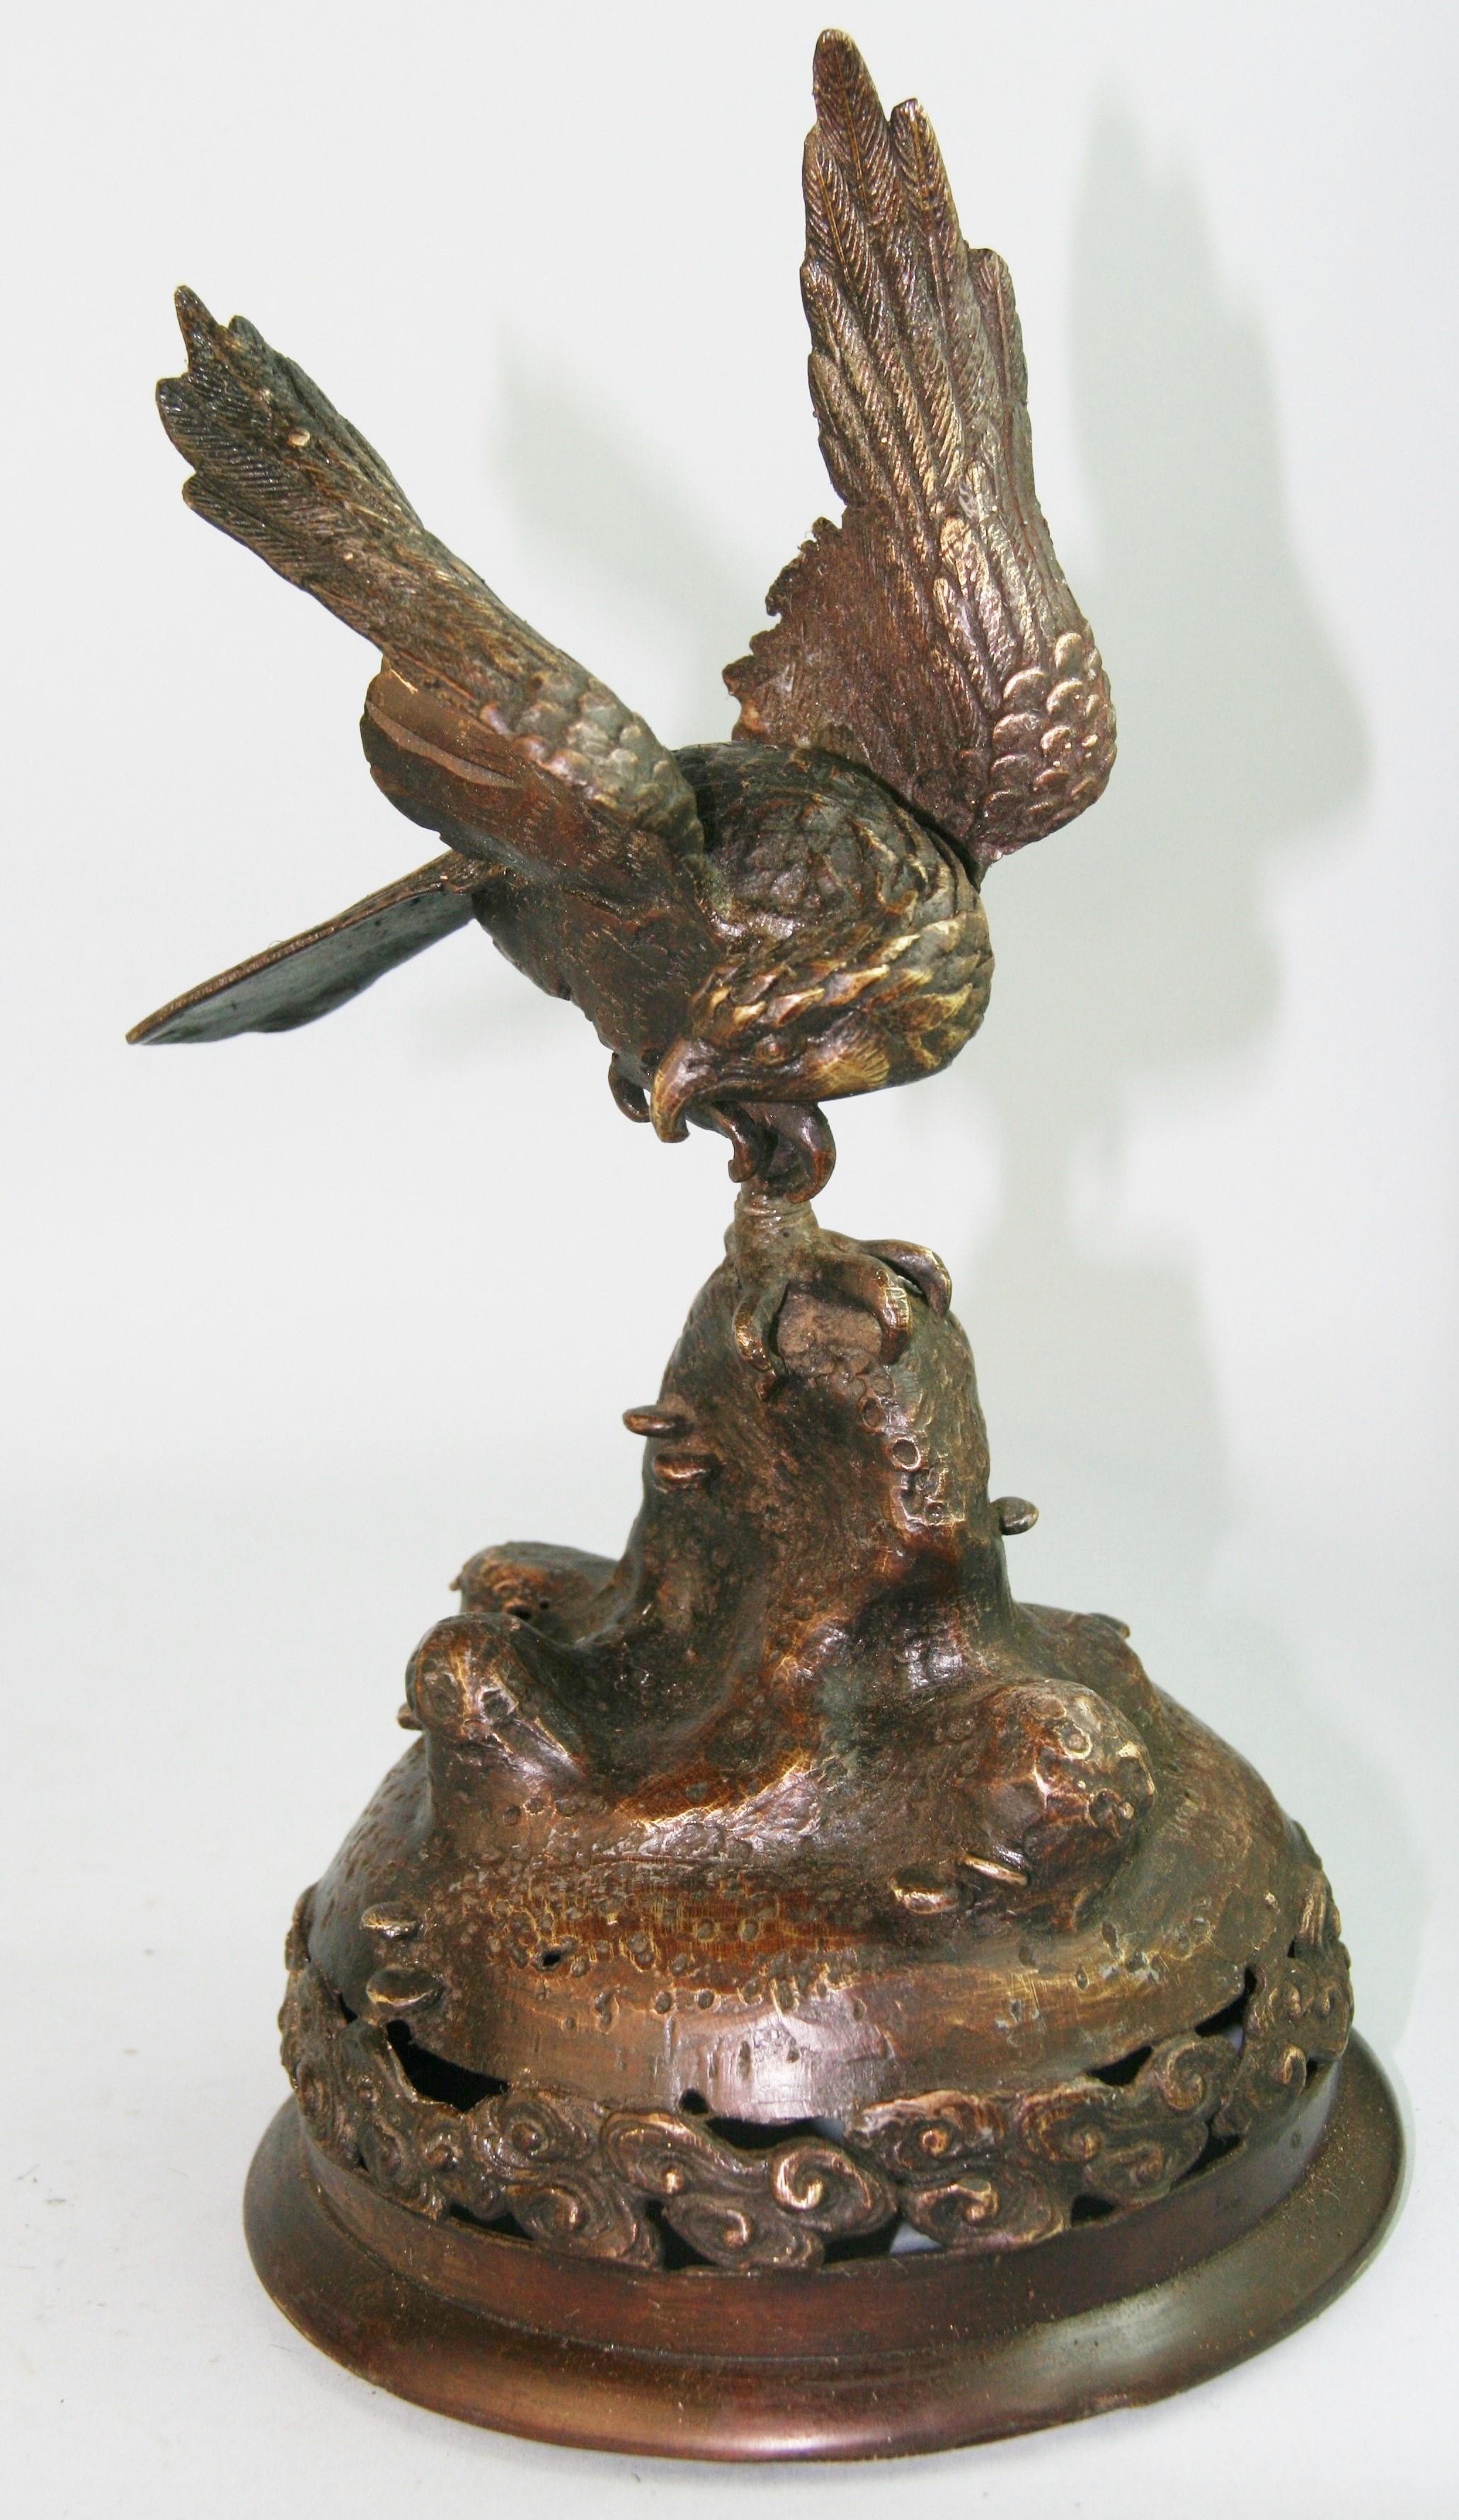 1231 Gardien de salle de faucon en bronze moulé finement détaillé  sculpture.
Dans la culture japonaise, les faucons sont un symbole de chance et de bonne fortune en raison de leur nature intelligente. 